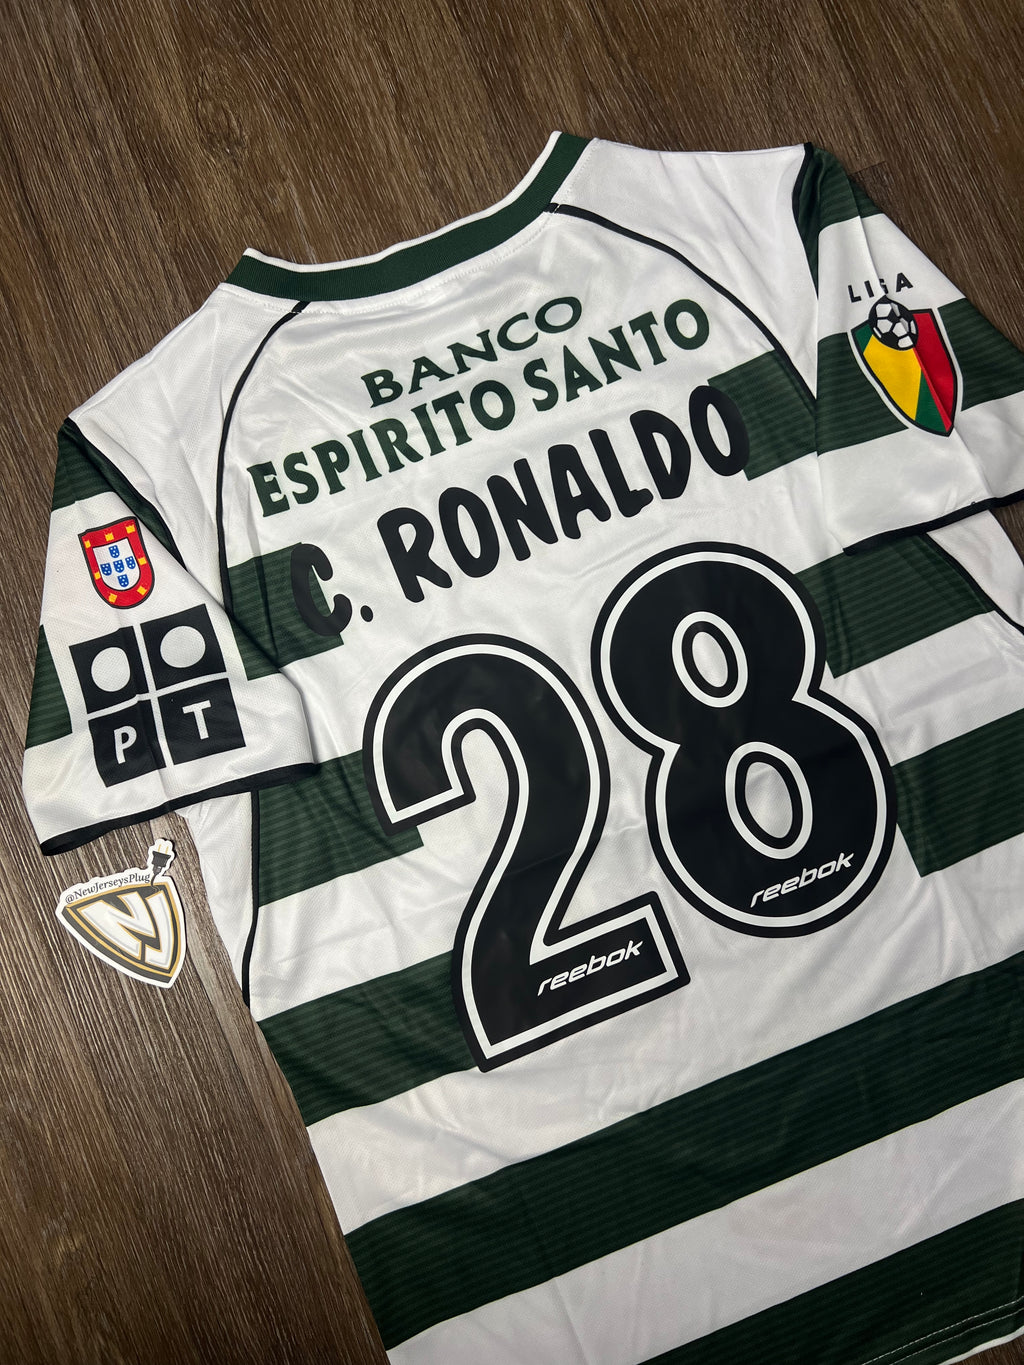 Sporting CP Cristiano Ronaldo Home Jersey